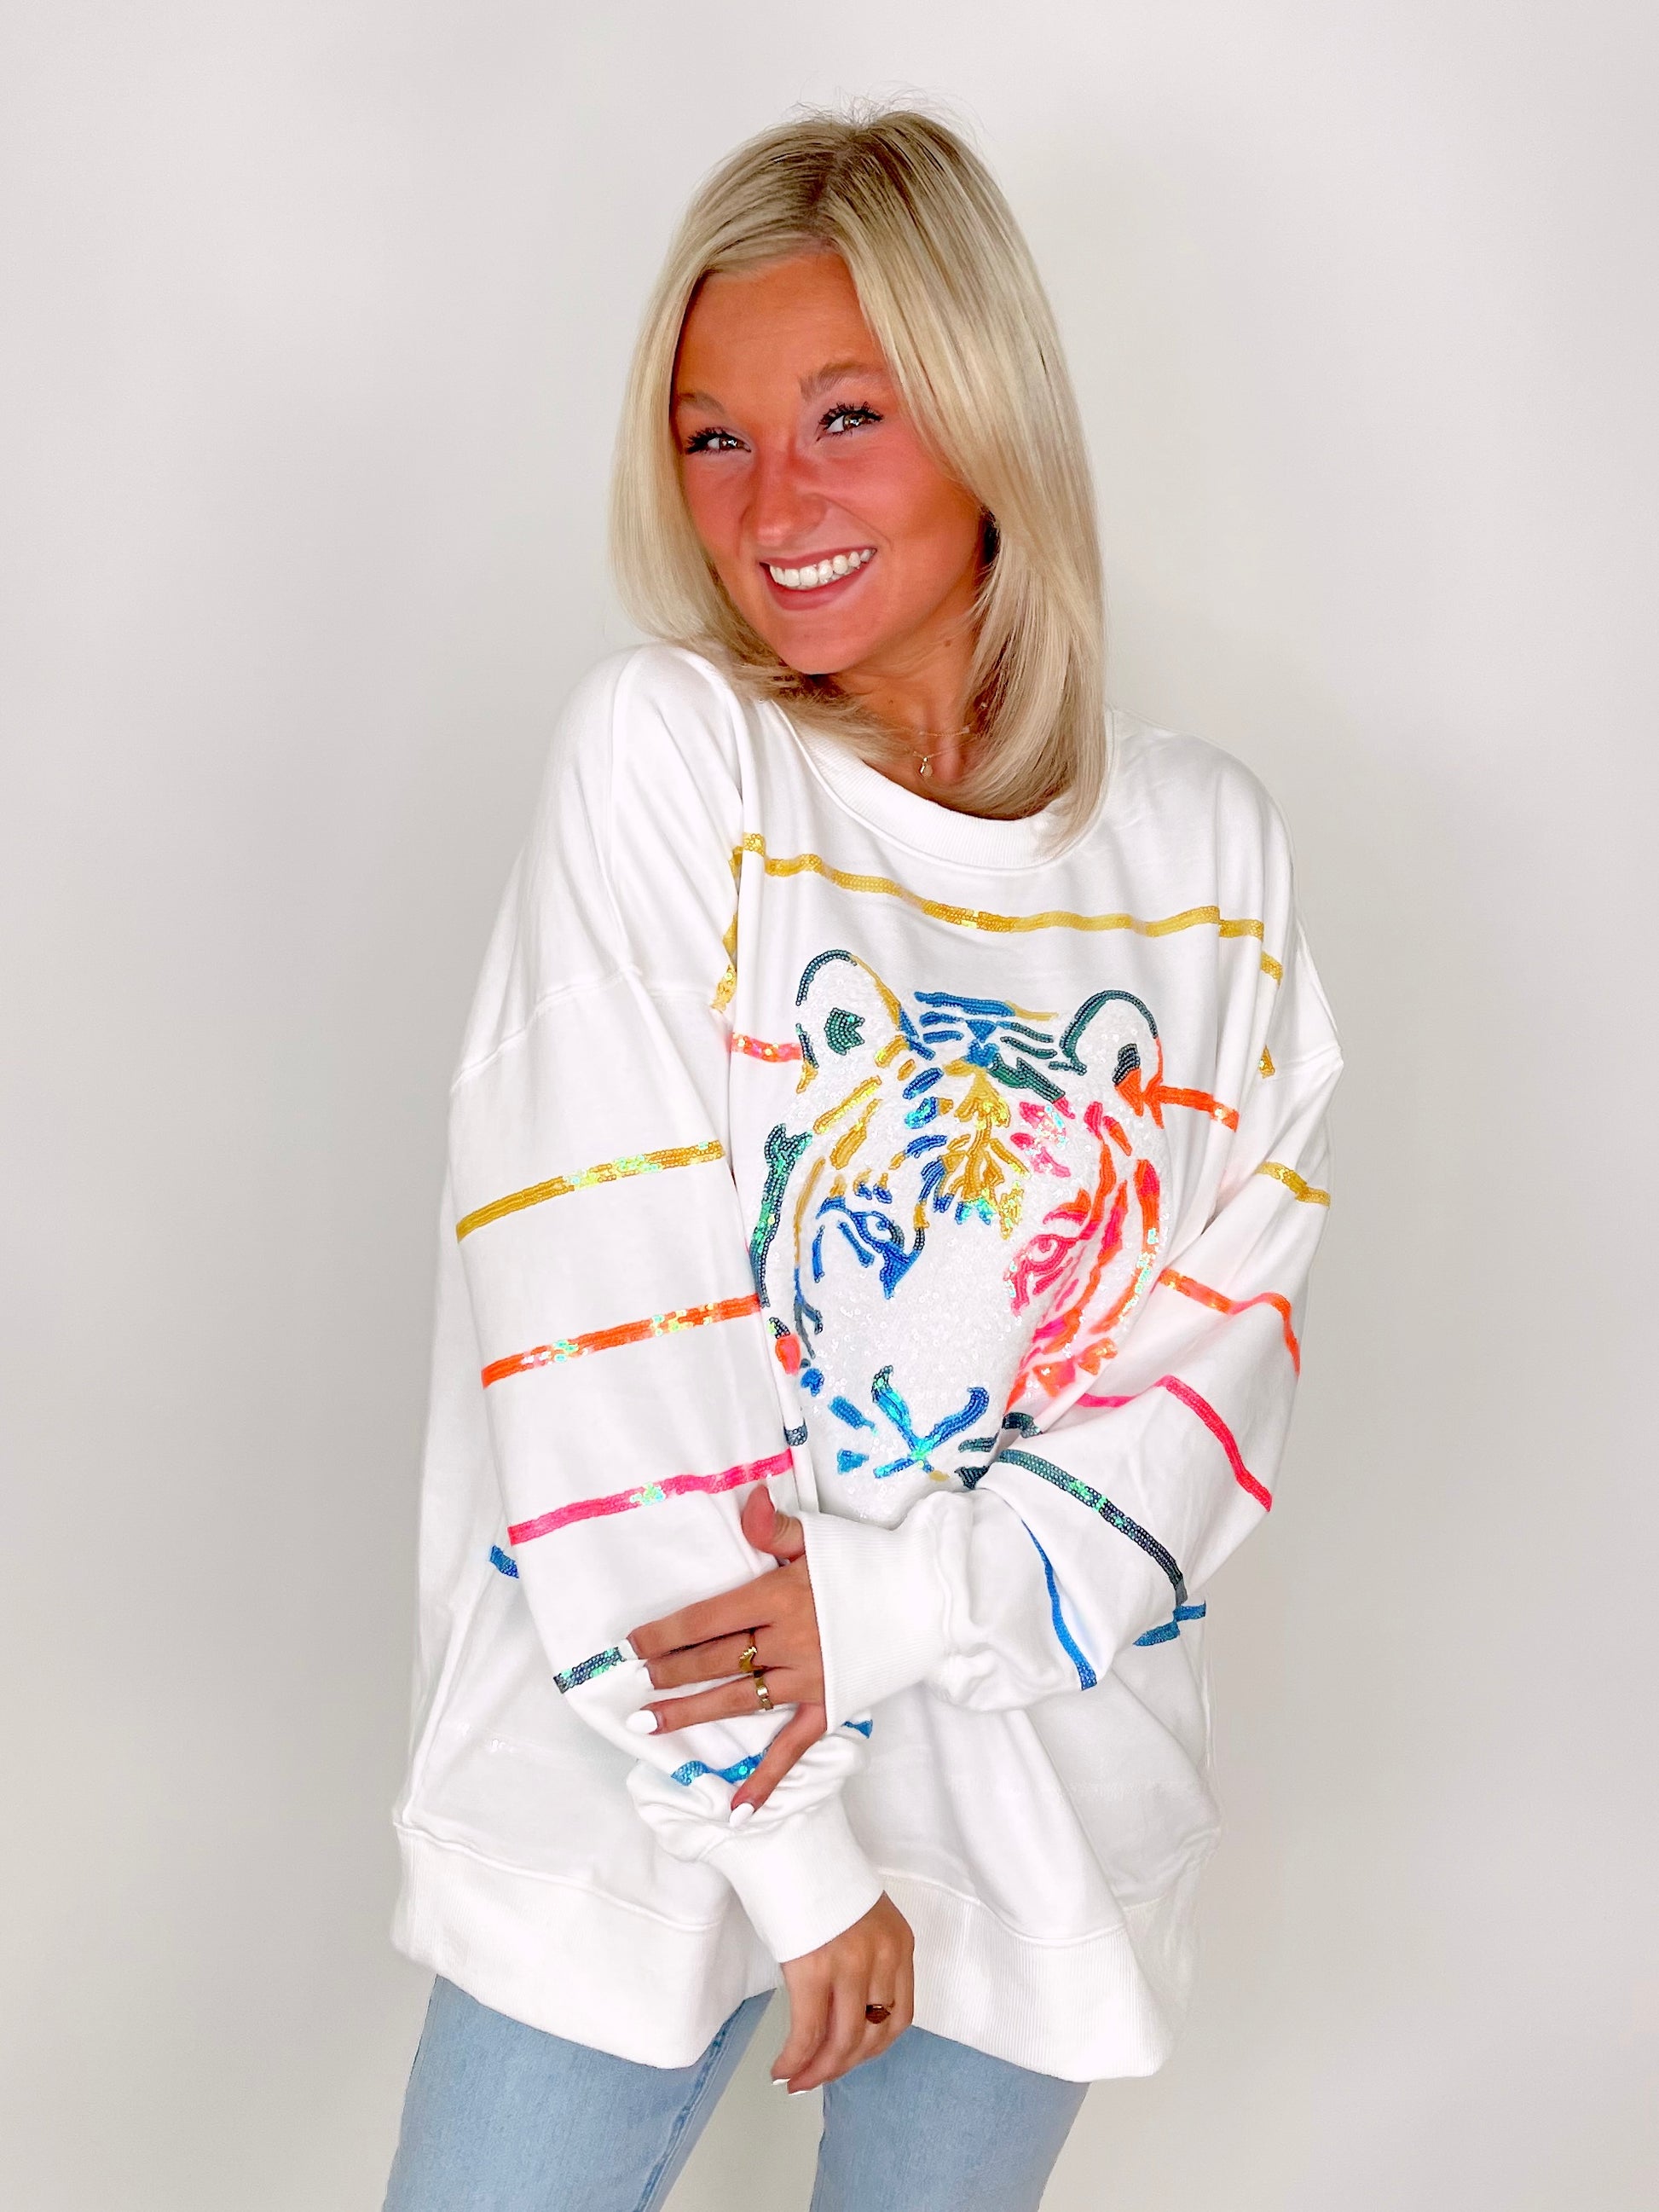 Neon Sequin Tiger Sweatshirt